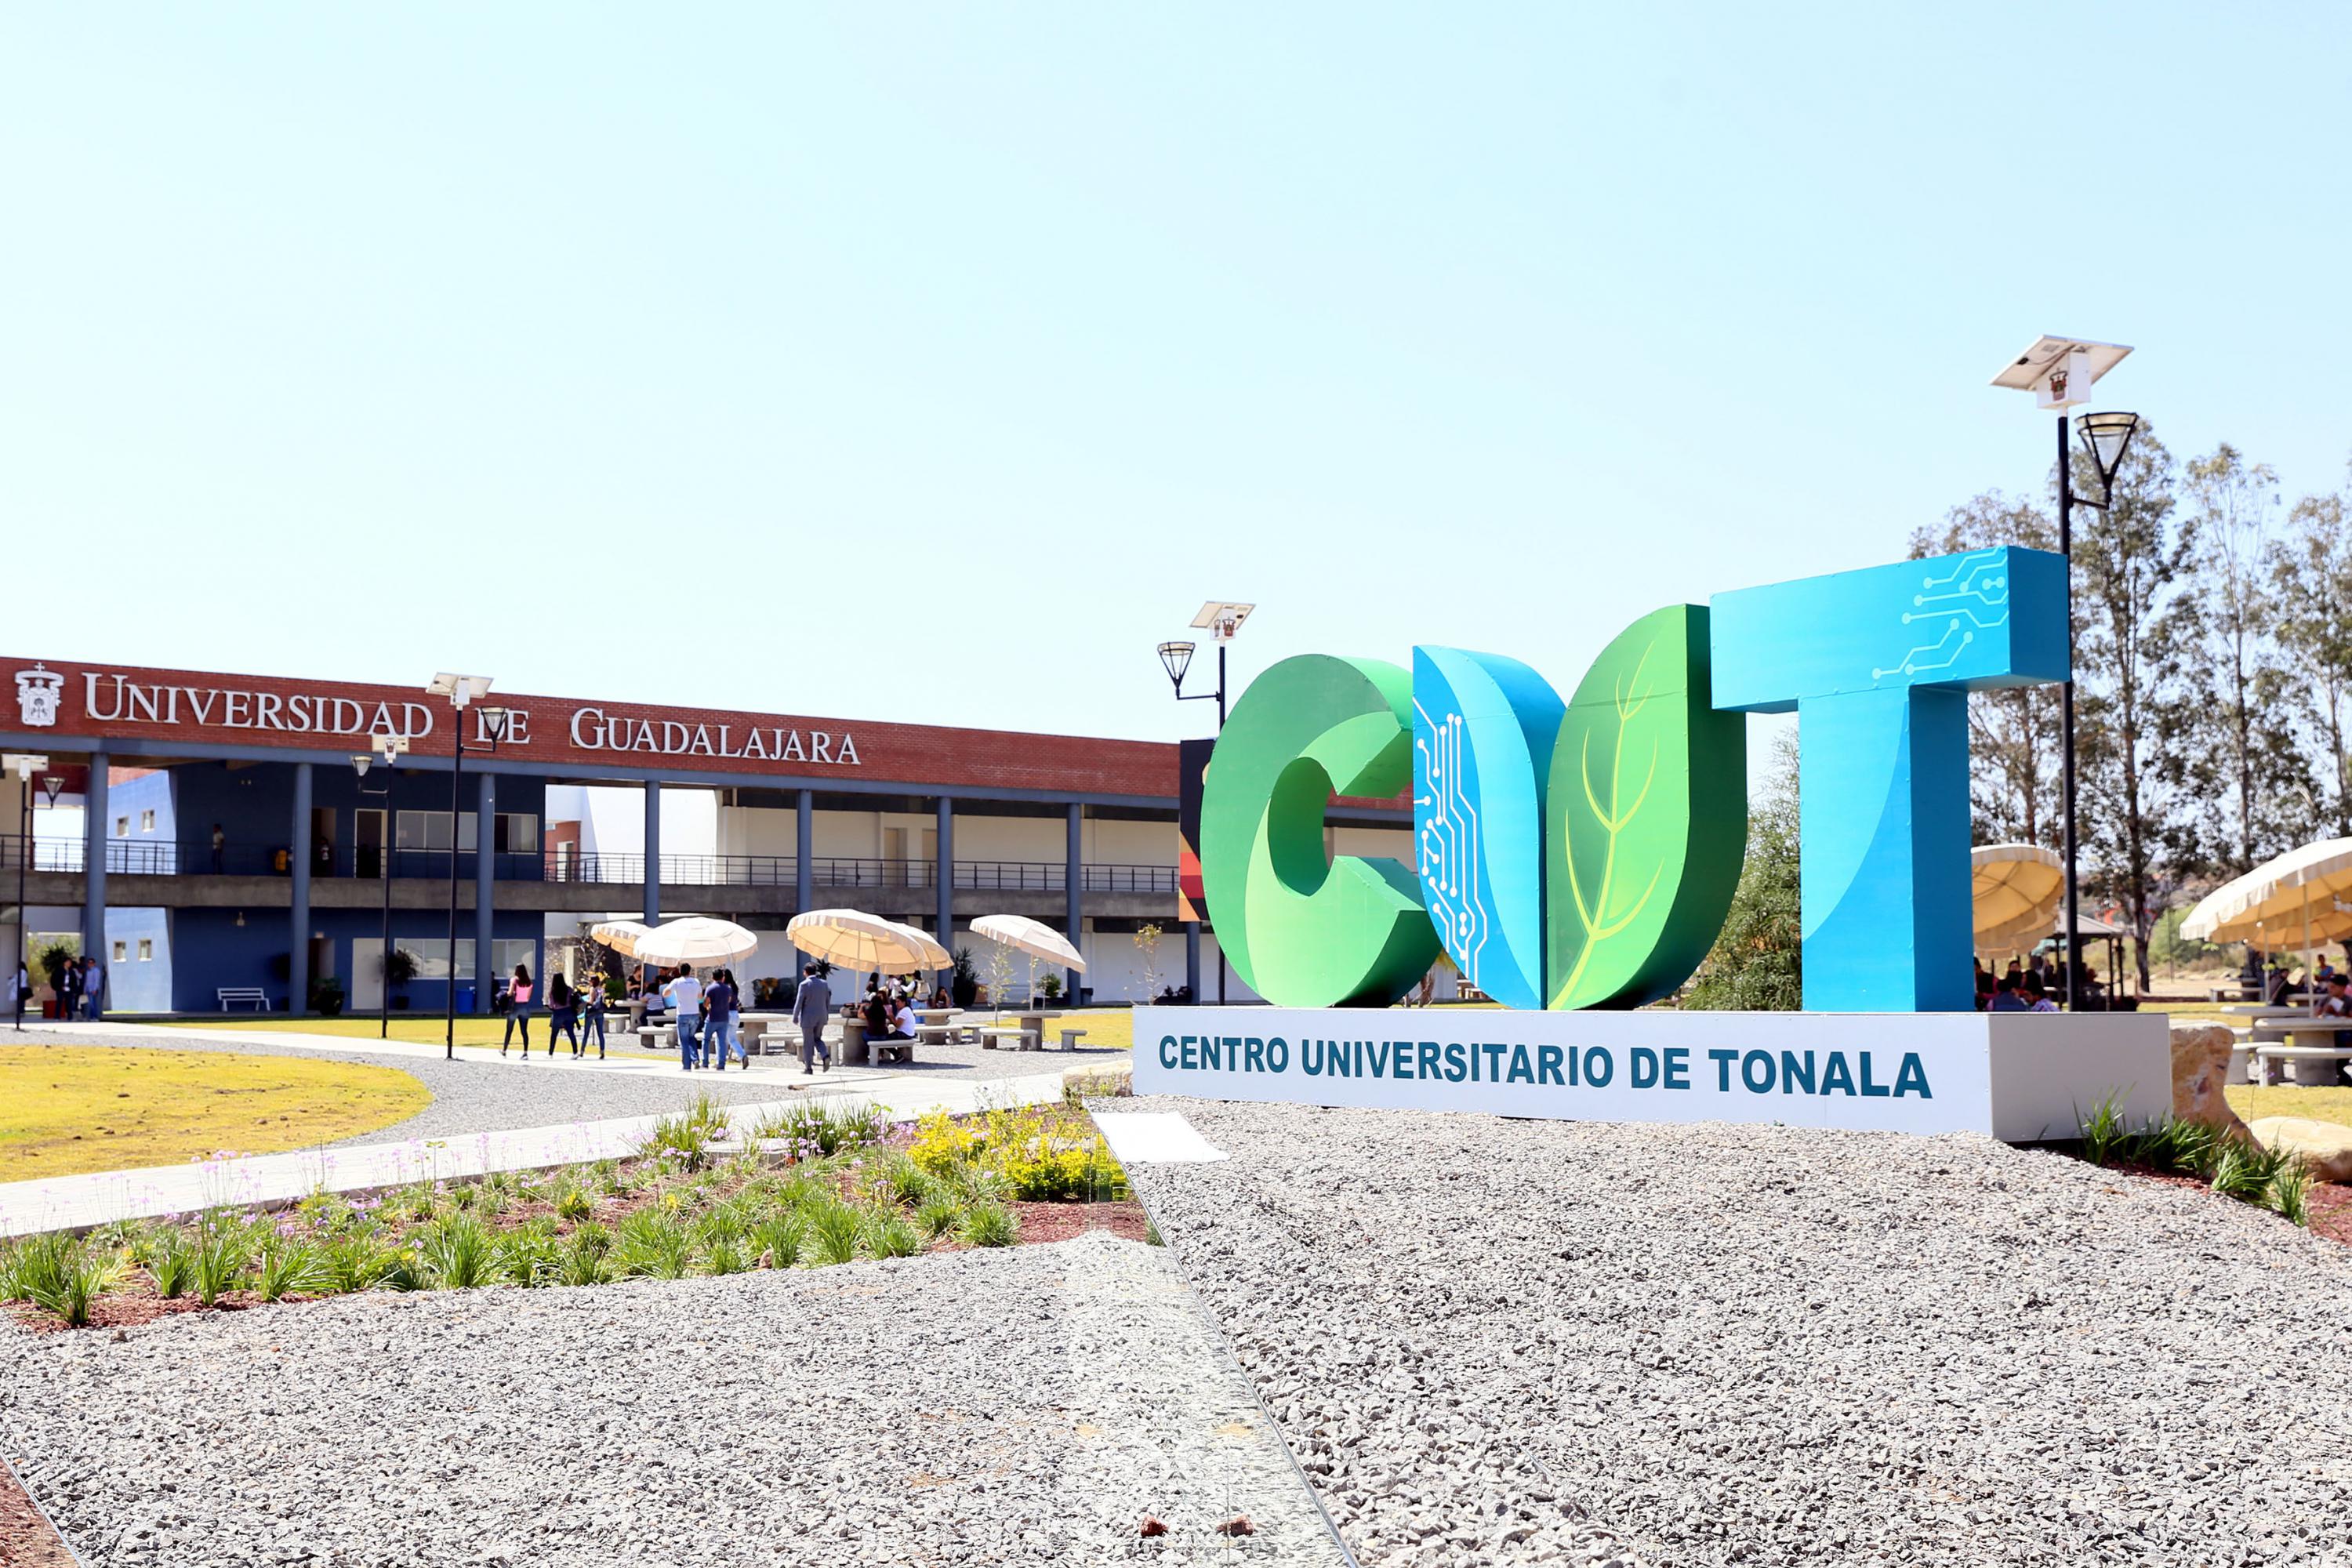 Fotgrafìa del logo de Cutonalá con el edificio de ciencias de la salud al fondo